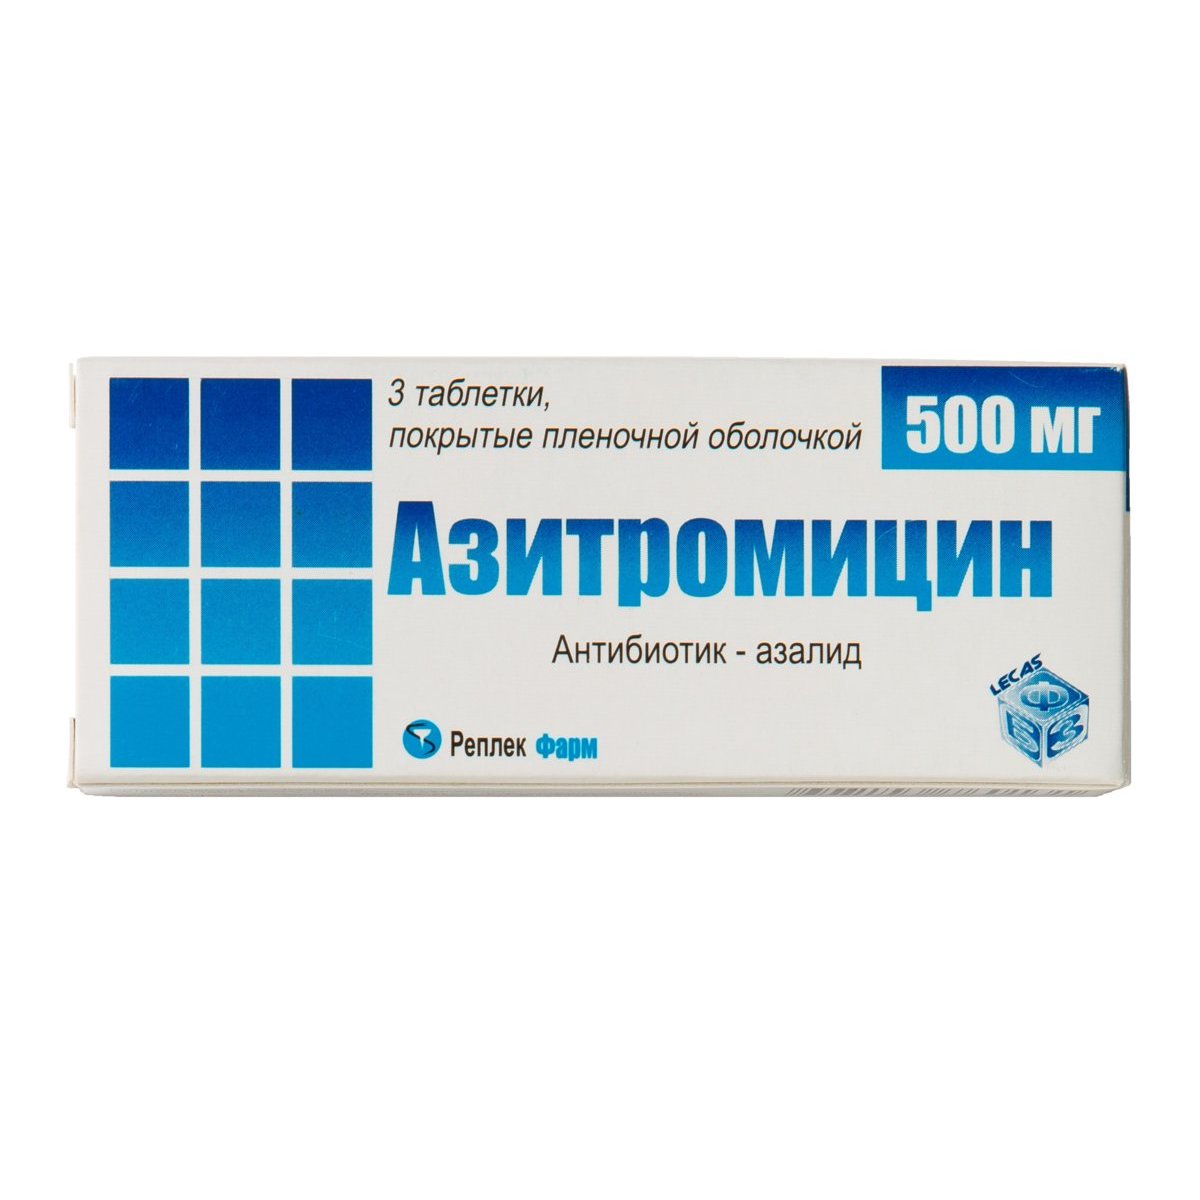 Азитромицин можно приобрести в аптеке в Ярославле в качестве справочной